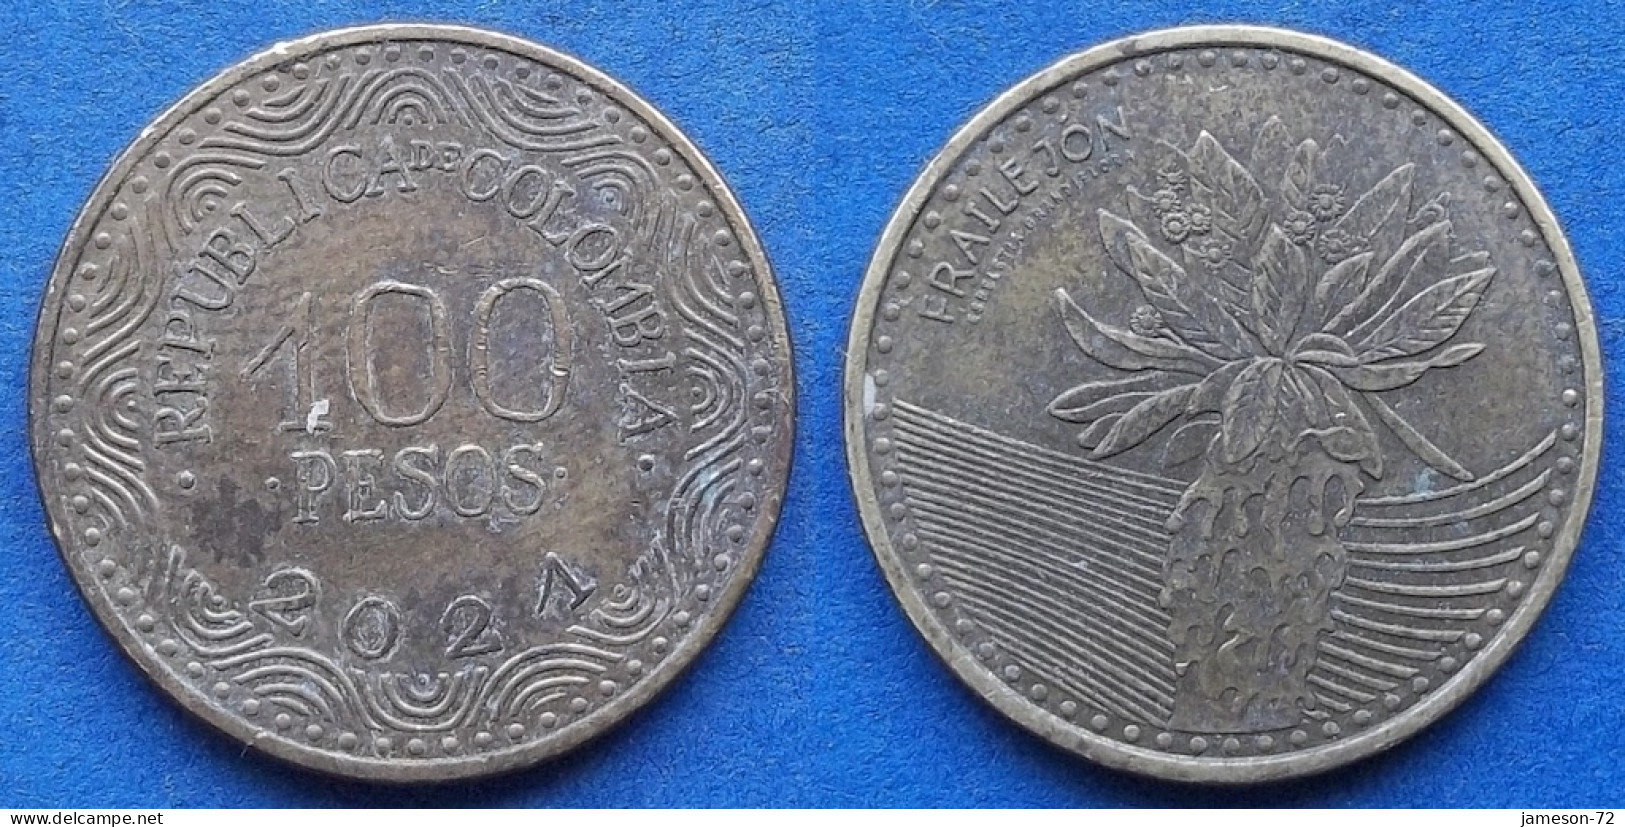 COLOMBIA - 100 Pesos 2021 "Frailejon" KM# 296 Republic - Edelweiss Coins - Kolumbien